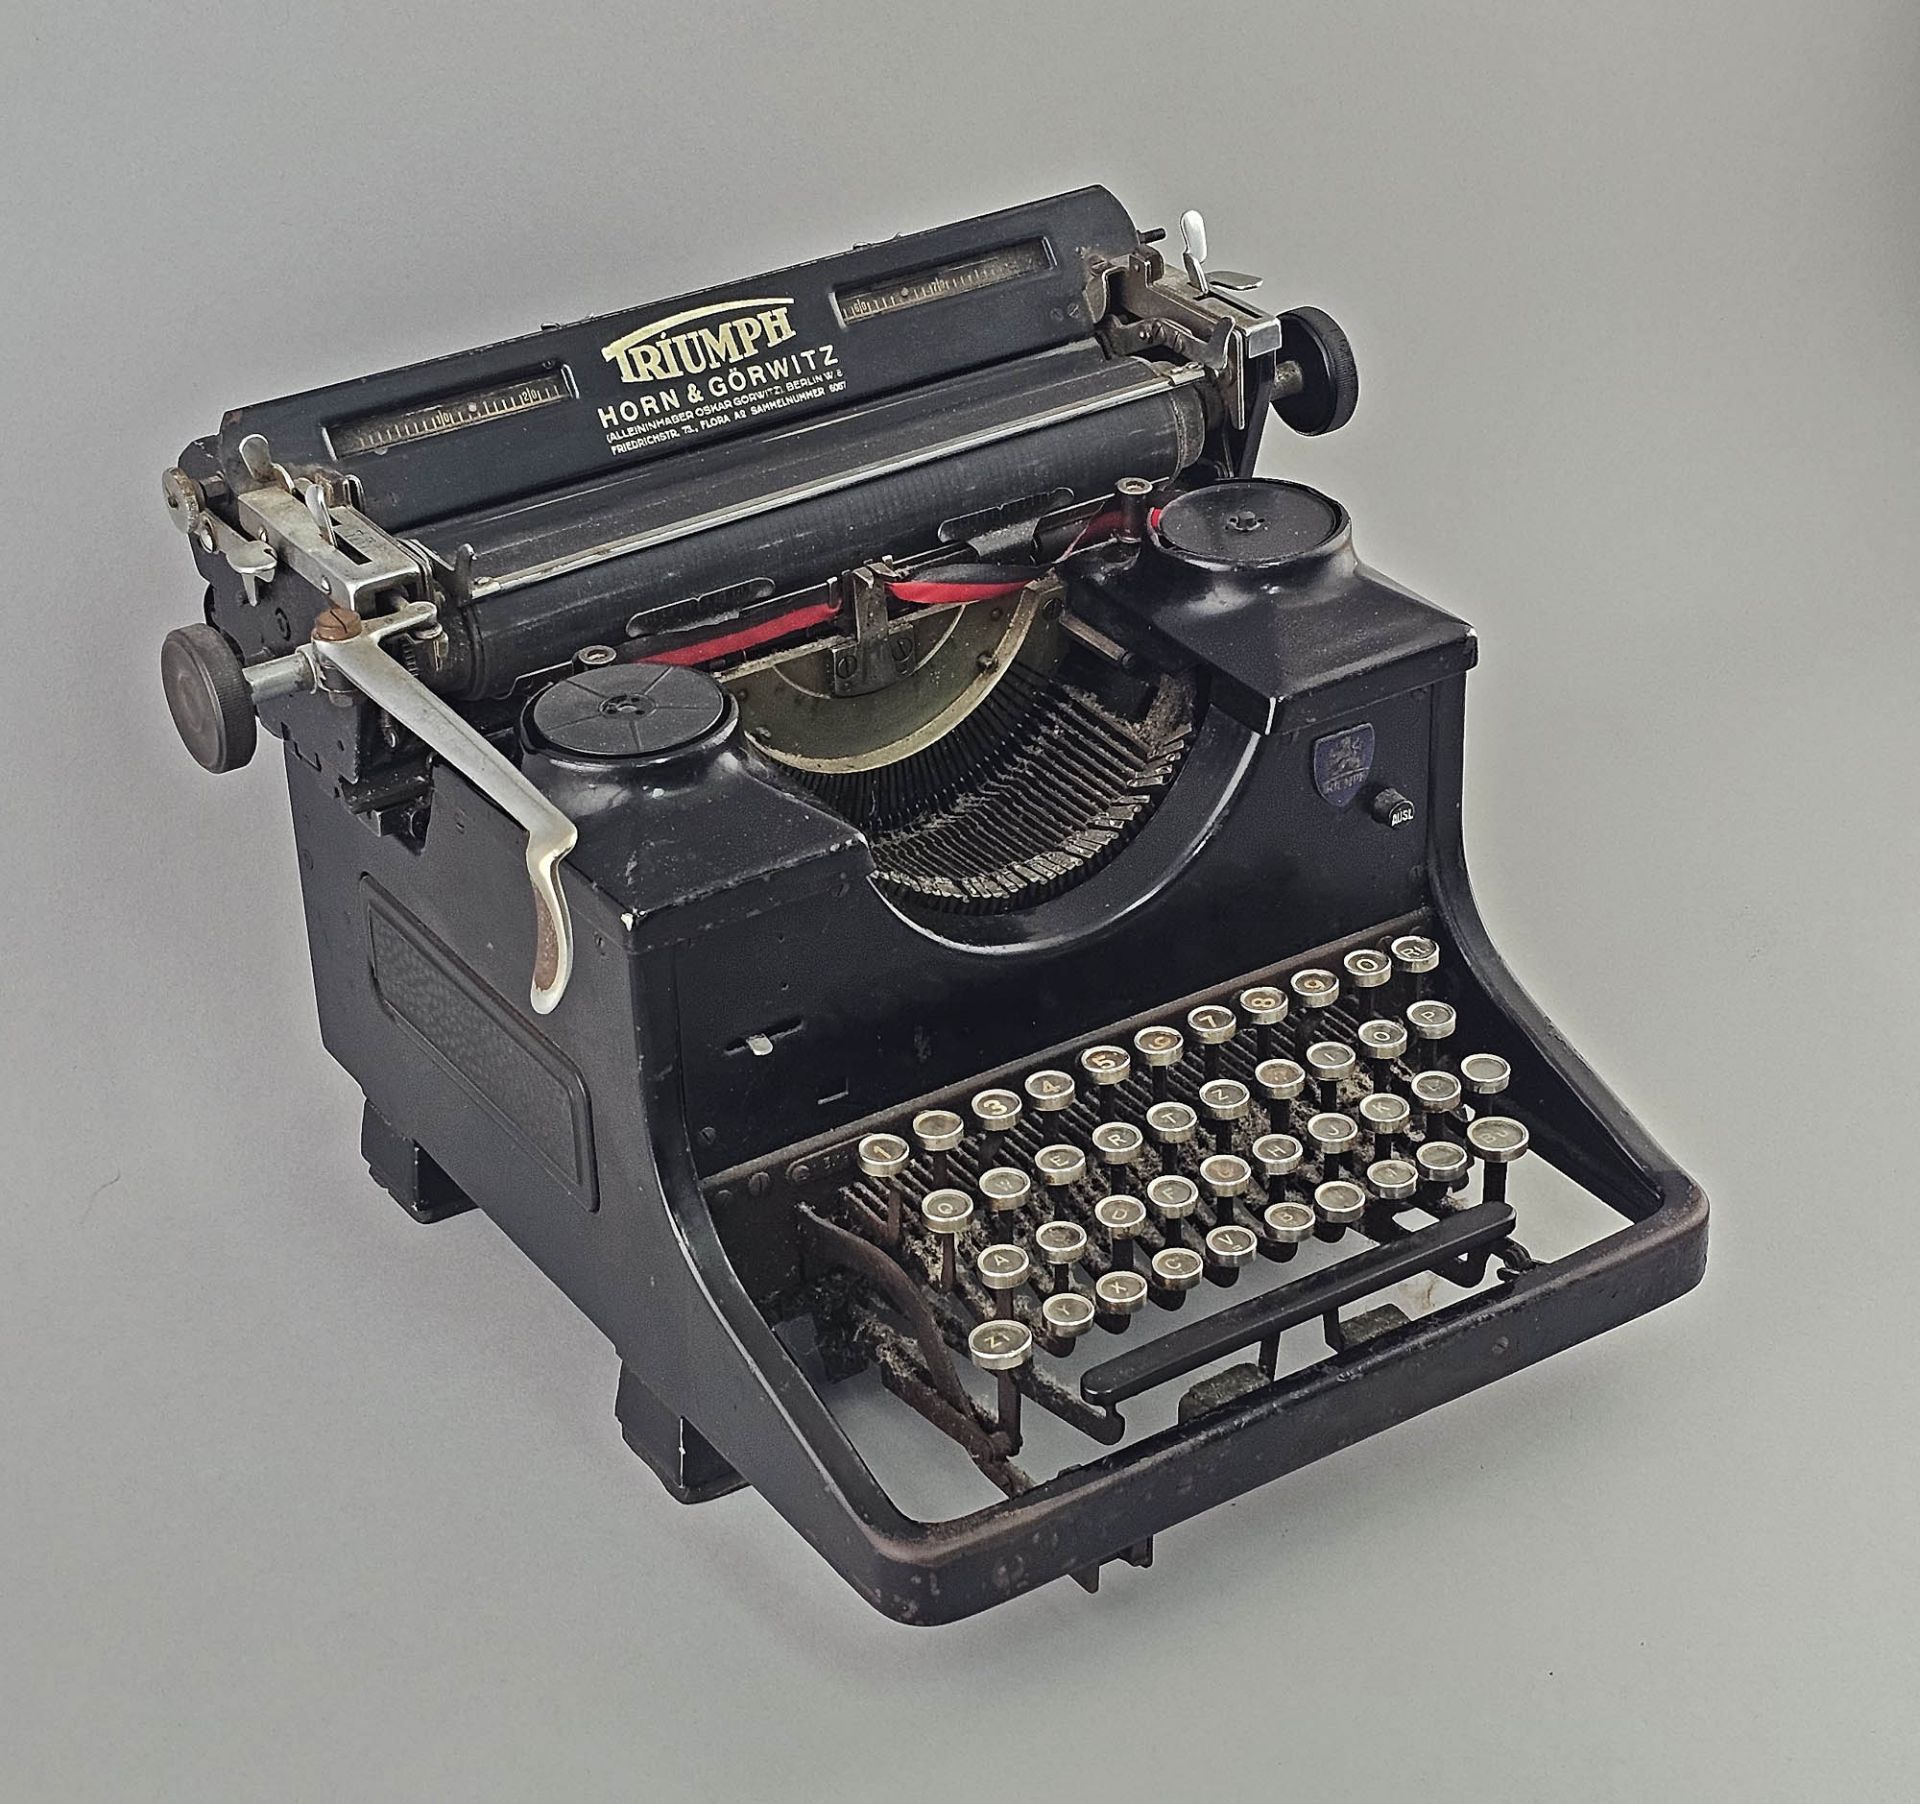 Schreibmaschine Triumph - Image 2 of 2